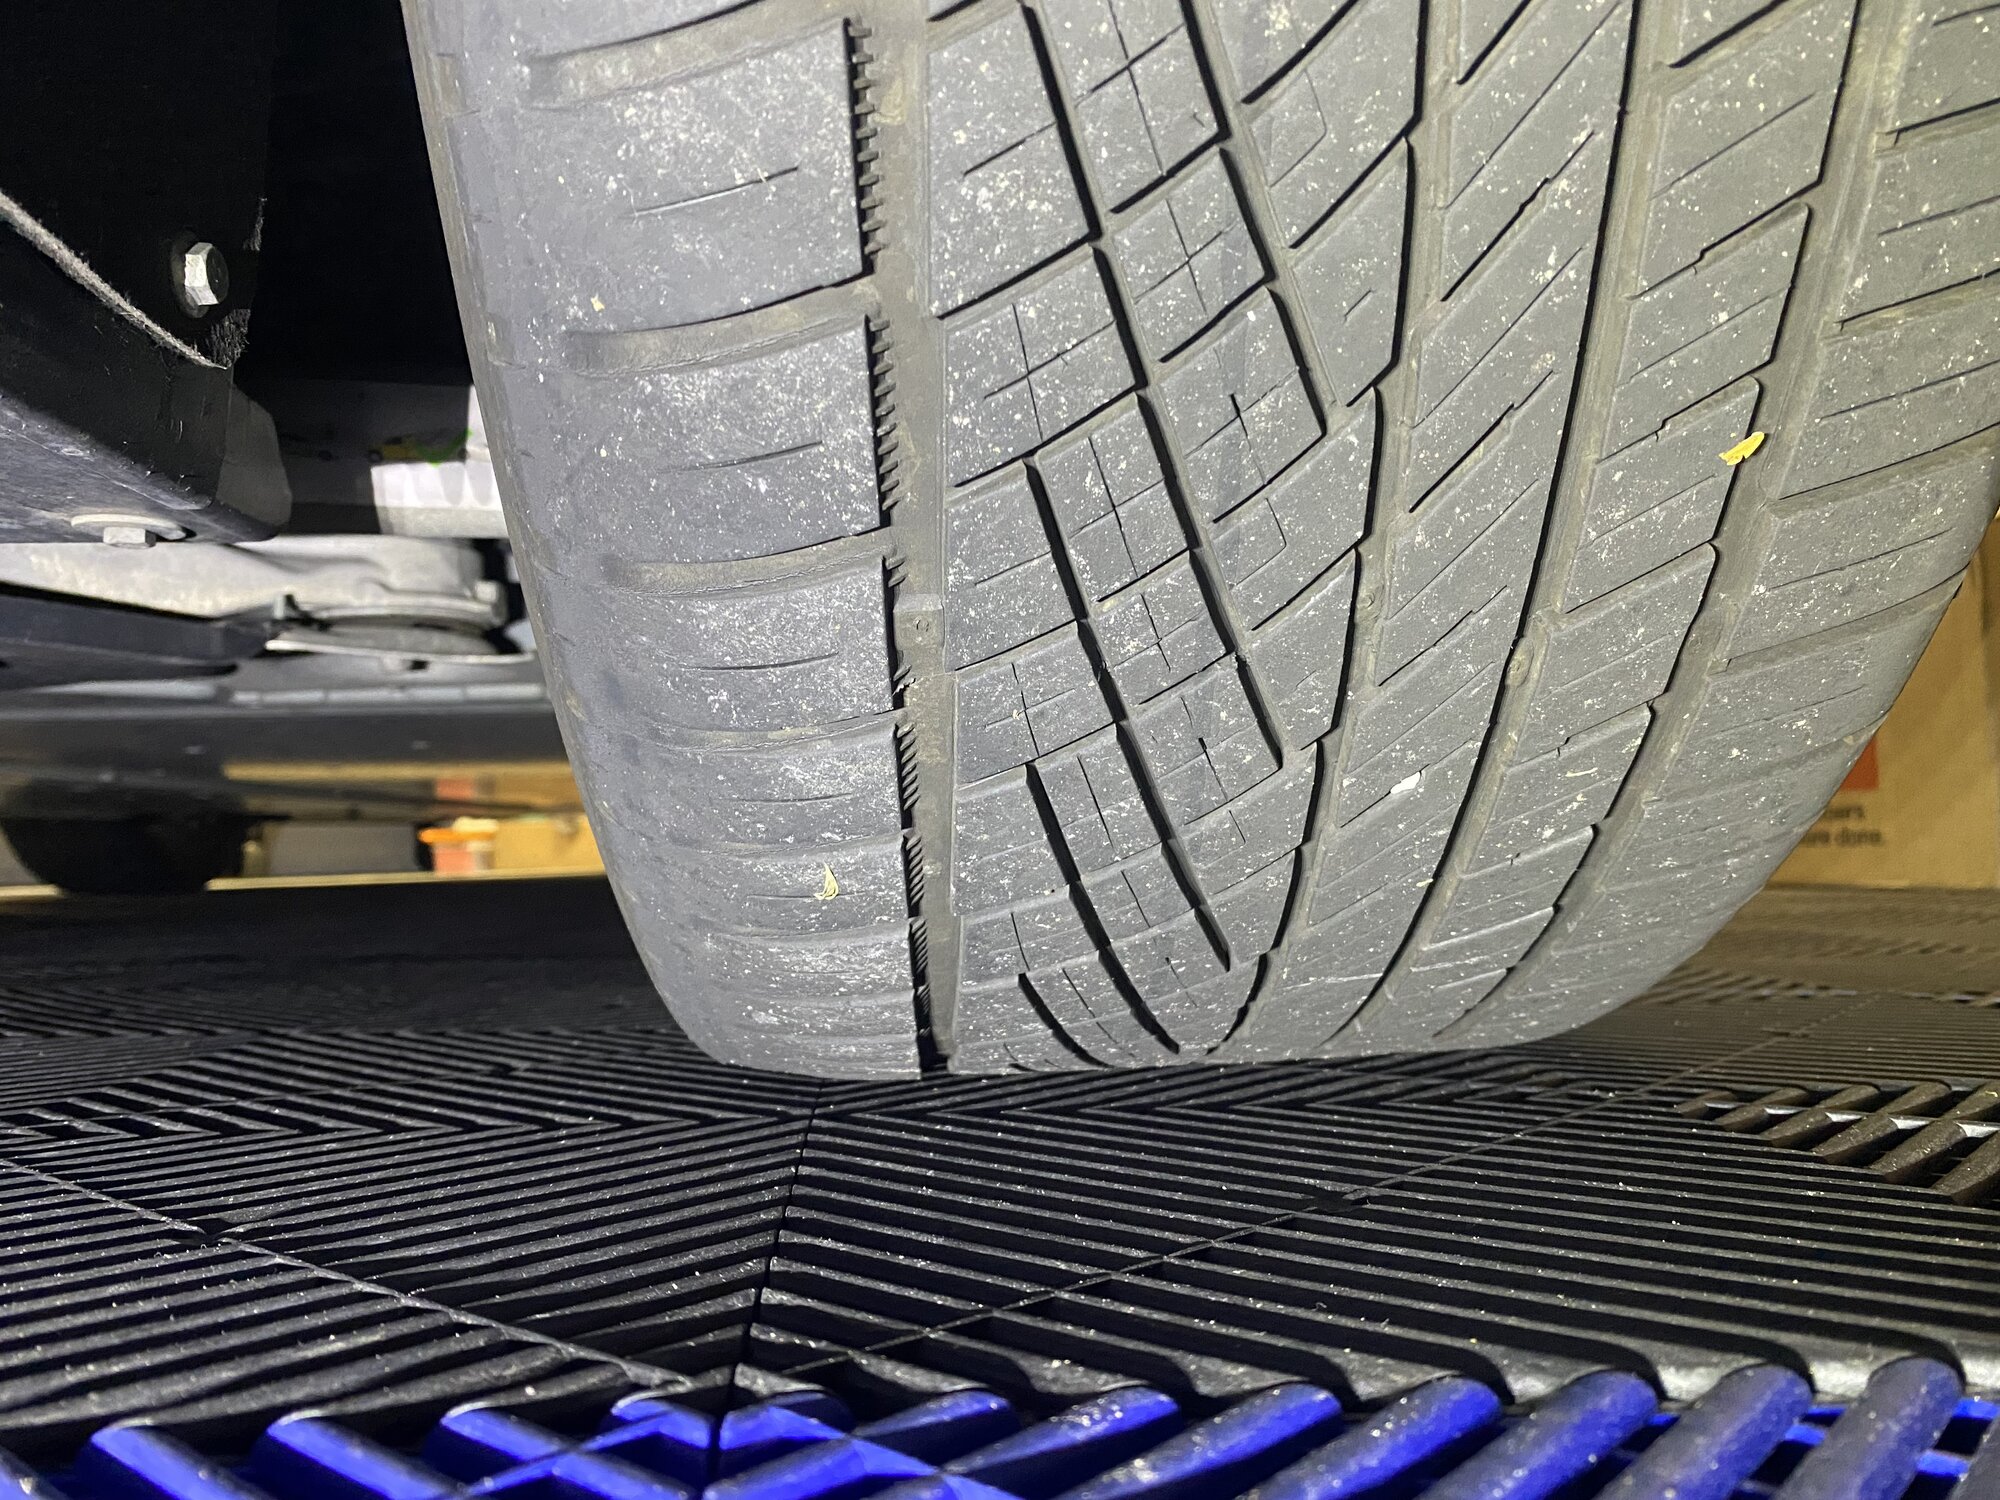 Inside Tire Wear Only- PP Wheels w/ Michelin PS A/S 3+ 255/40ZR19